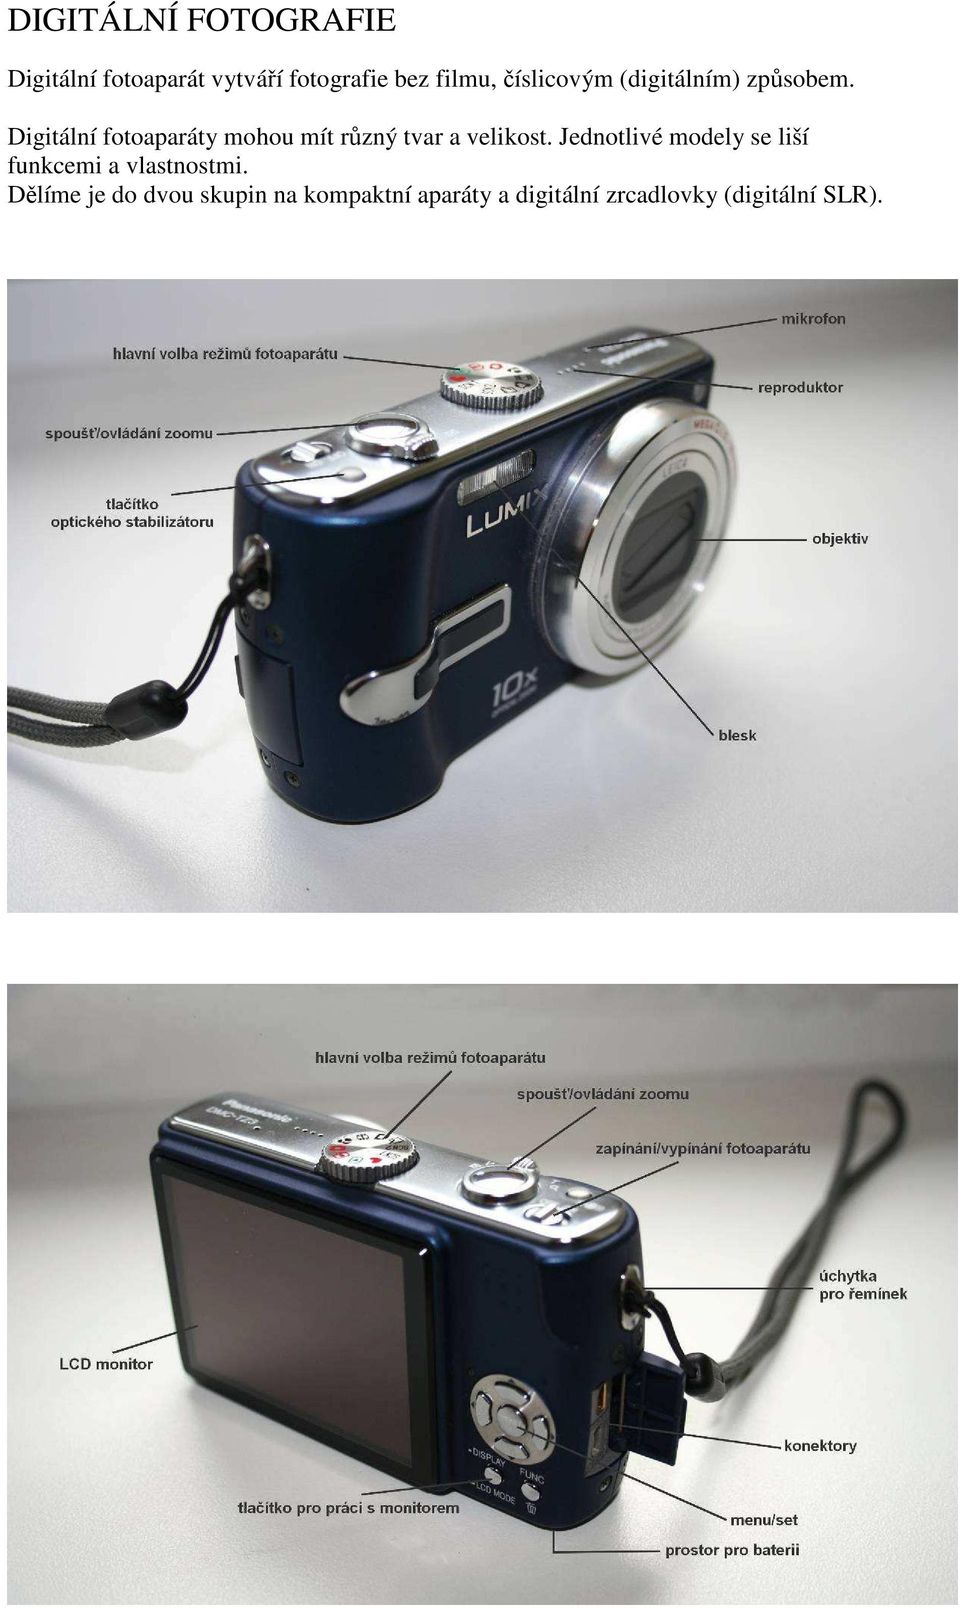 Digitální fotoaparáty mohou mít různý tvar a velikost.